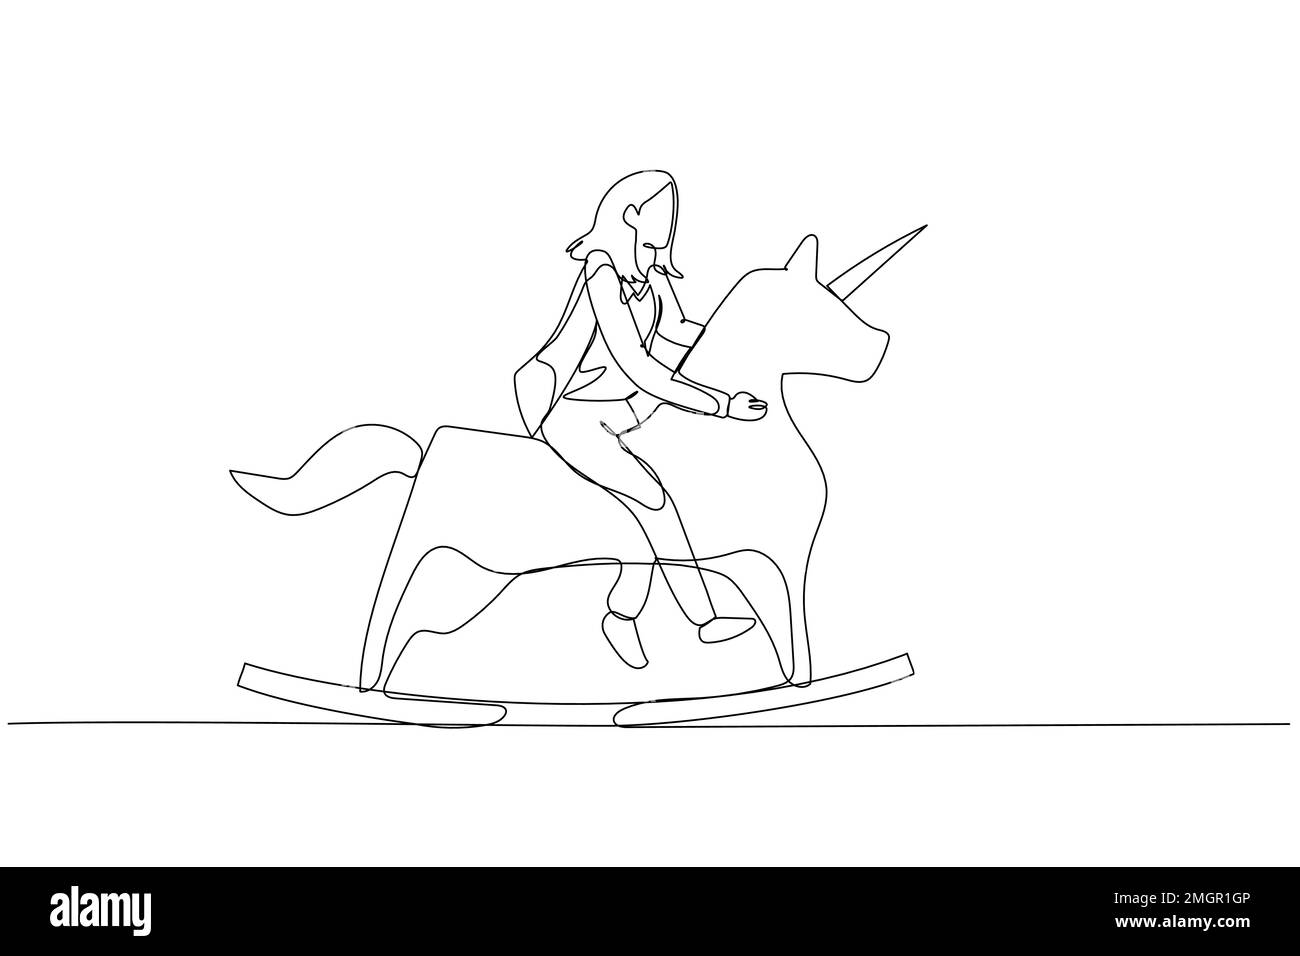 Darstellung einer Geschäftsfrau, die auf einem Einhornpferd reitet. Konzept der Unternehmensgründung und kreative Idee Stock Vektor